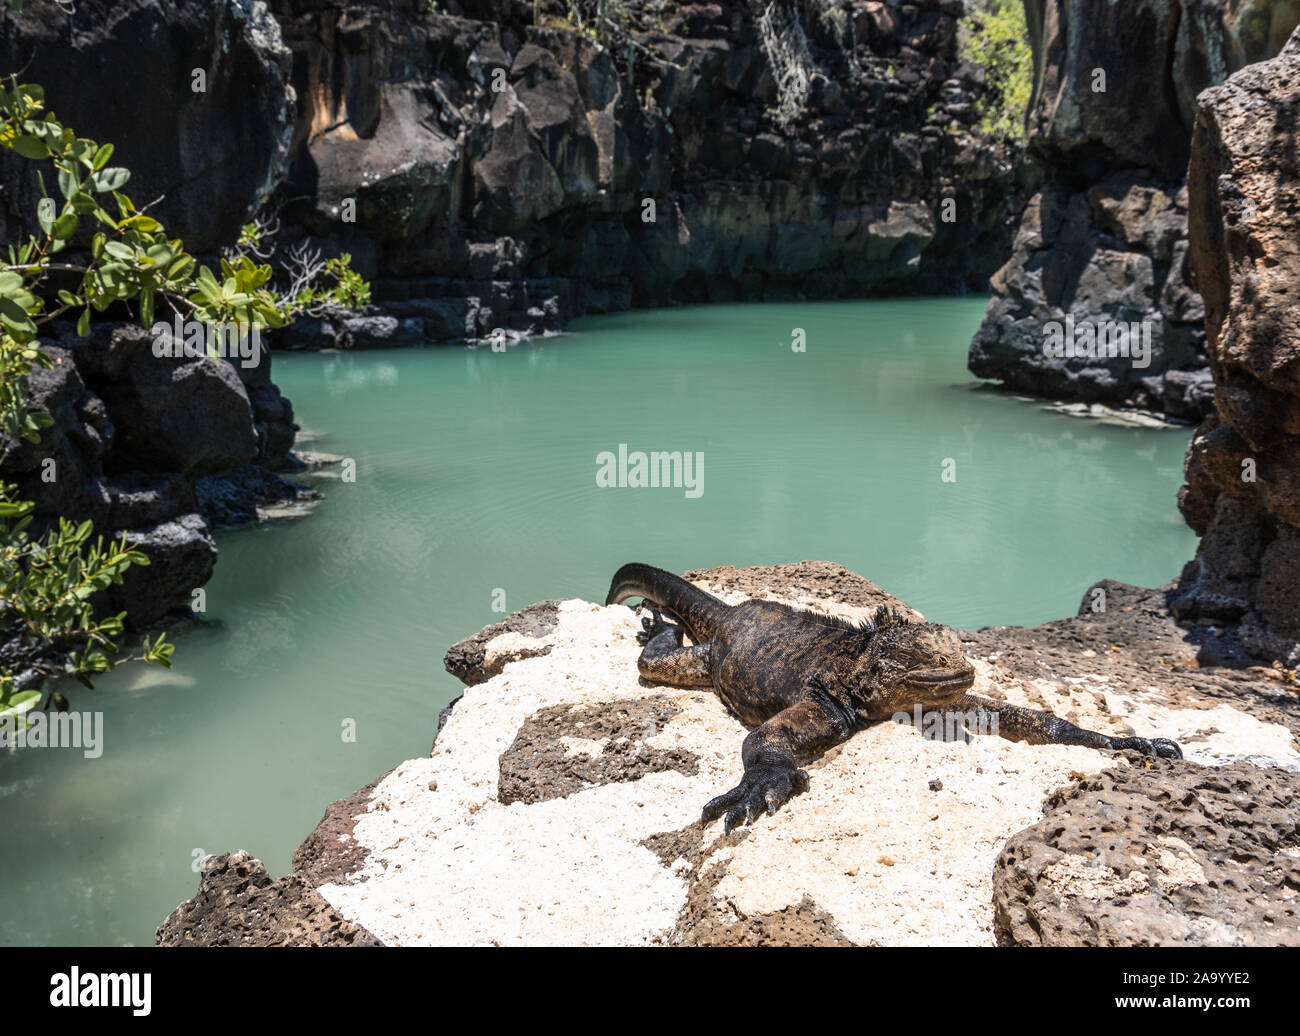 Una iguana marina baña al sol en los bancos de una de las calas más exclusivas en las Galápagos. La salinidad en el agua crea este color natural. Foto de stock